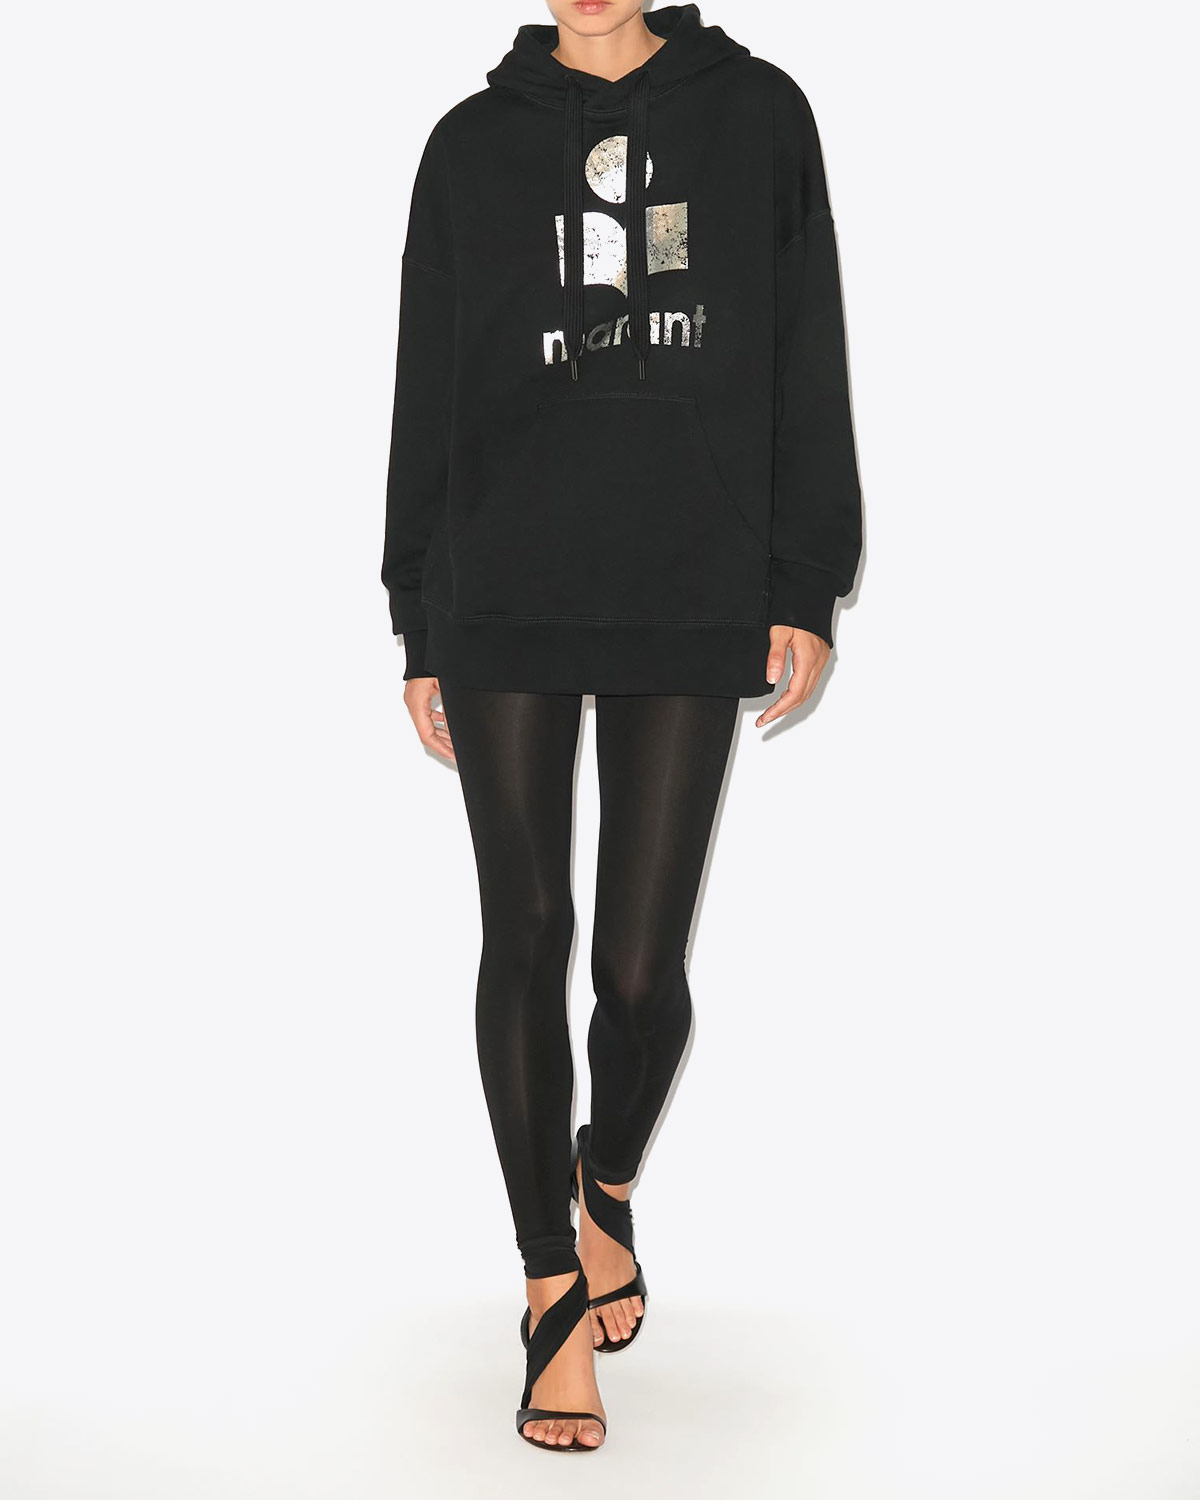 Sweat-shirt oversize à capuche noir logo argent Mansel Isabel Marant Etoile. Porté avec un legging.